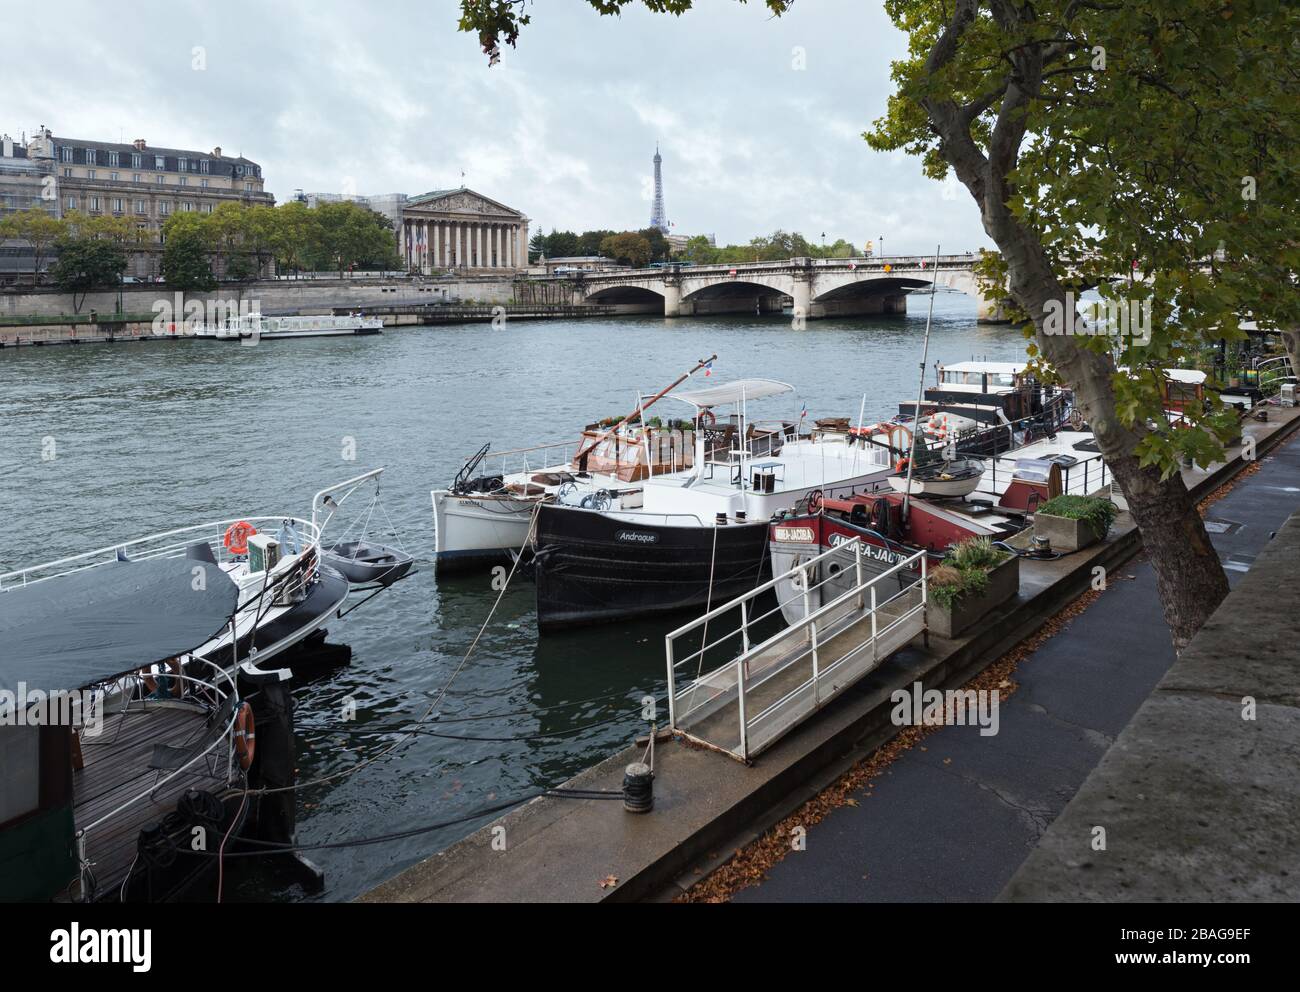 The Seine river in Paris, France. View from Quai des Tuileries to Palais de Bourbon and Pont de la Concorde Stock Photo